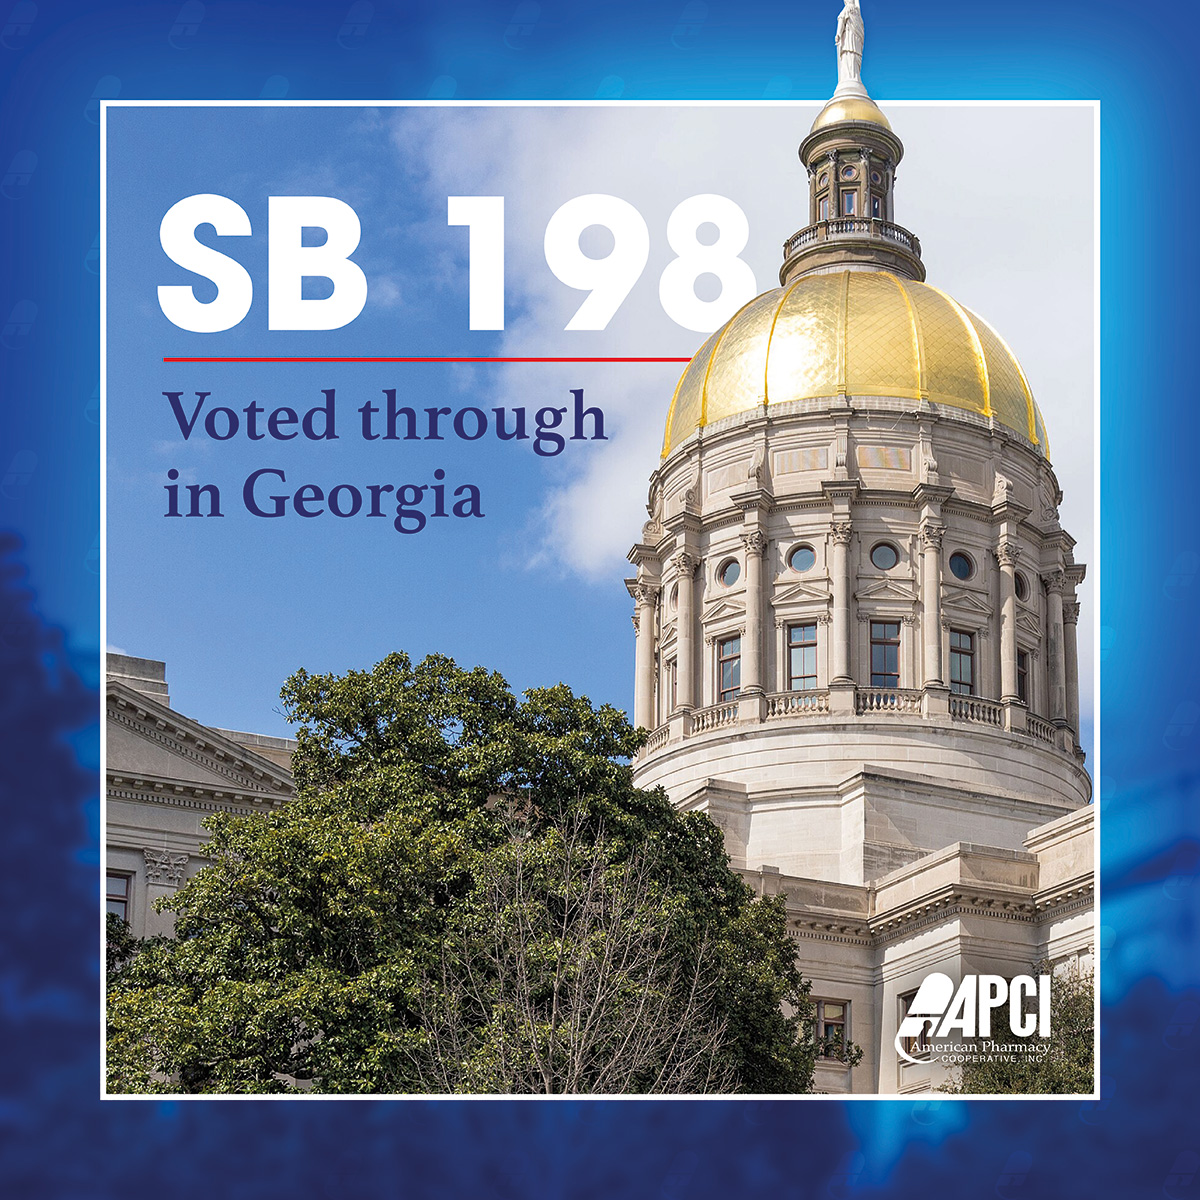 APCI social media post announcing legislative passage of Georgia SB 198